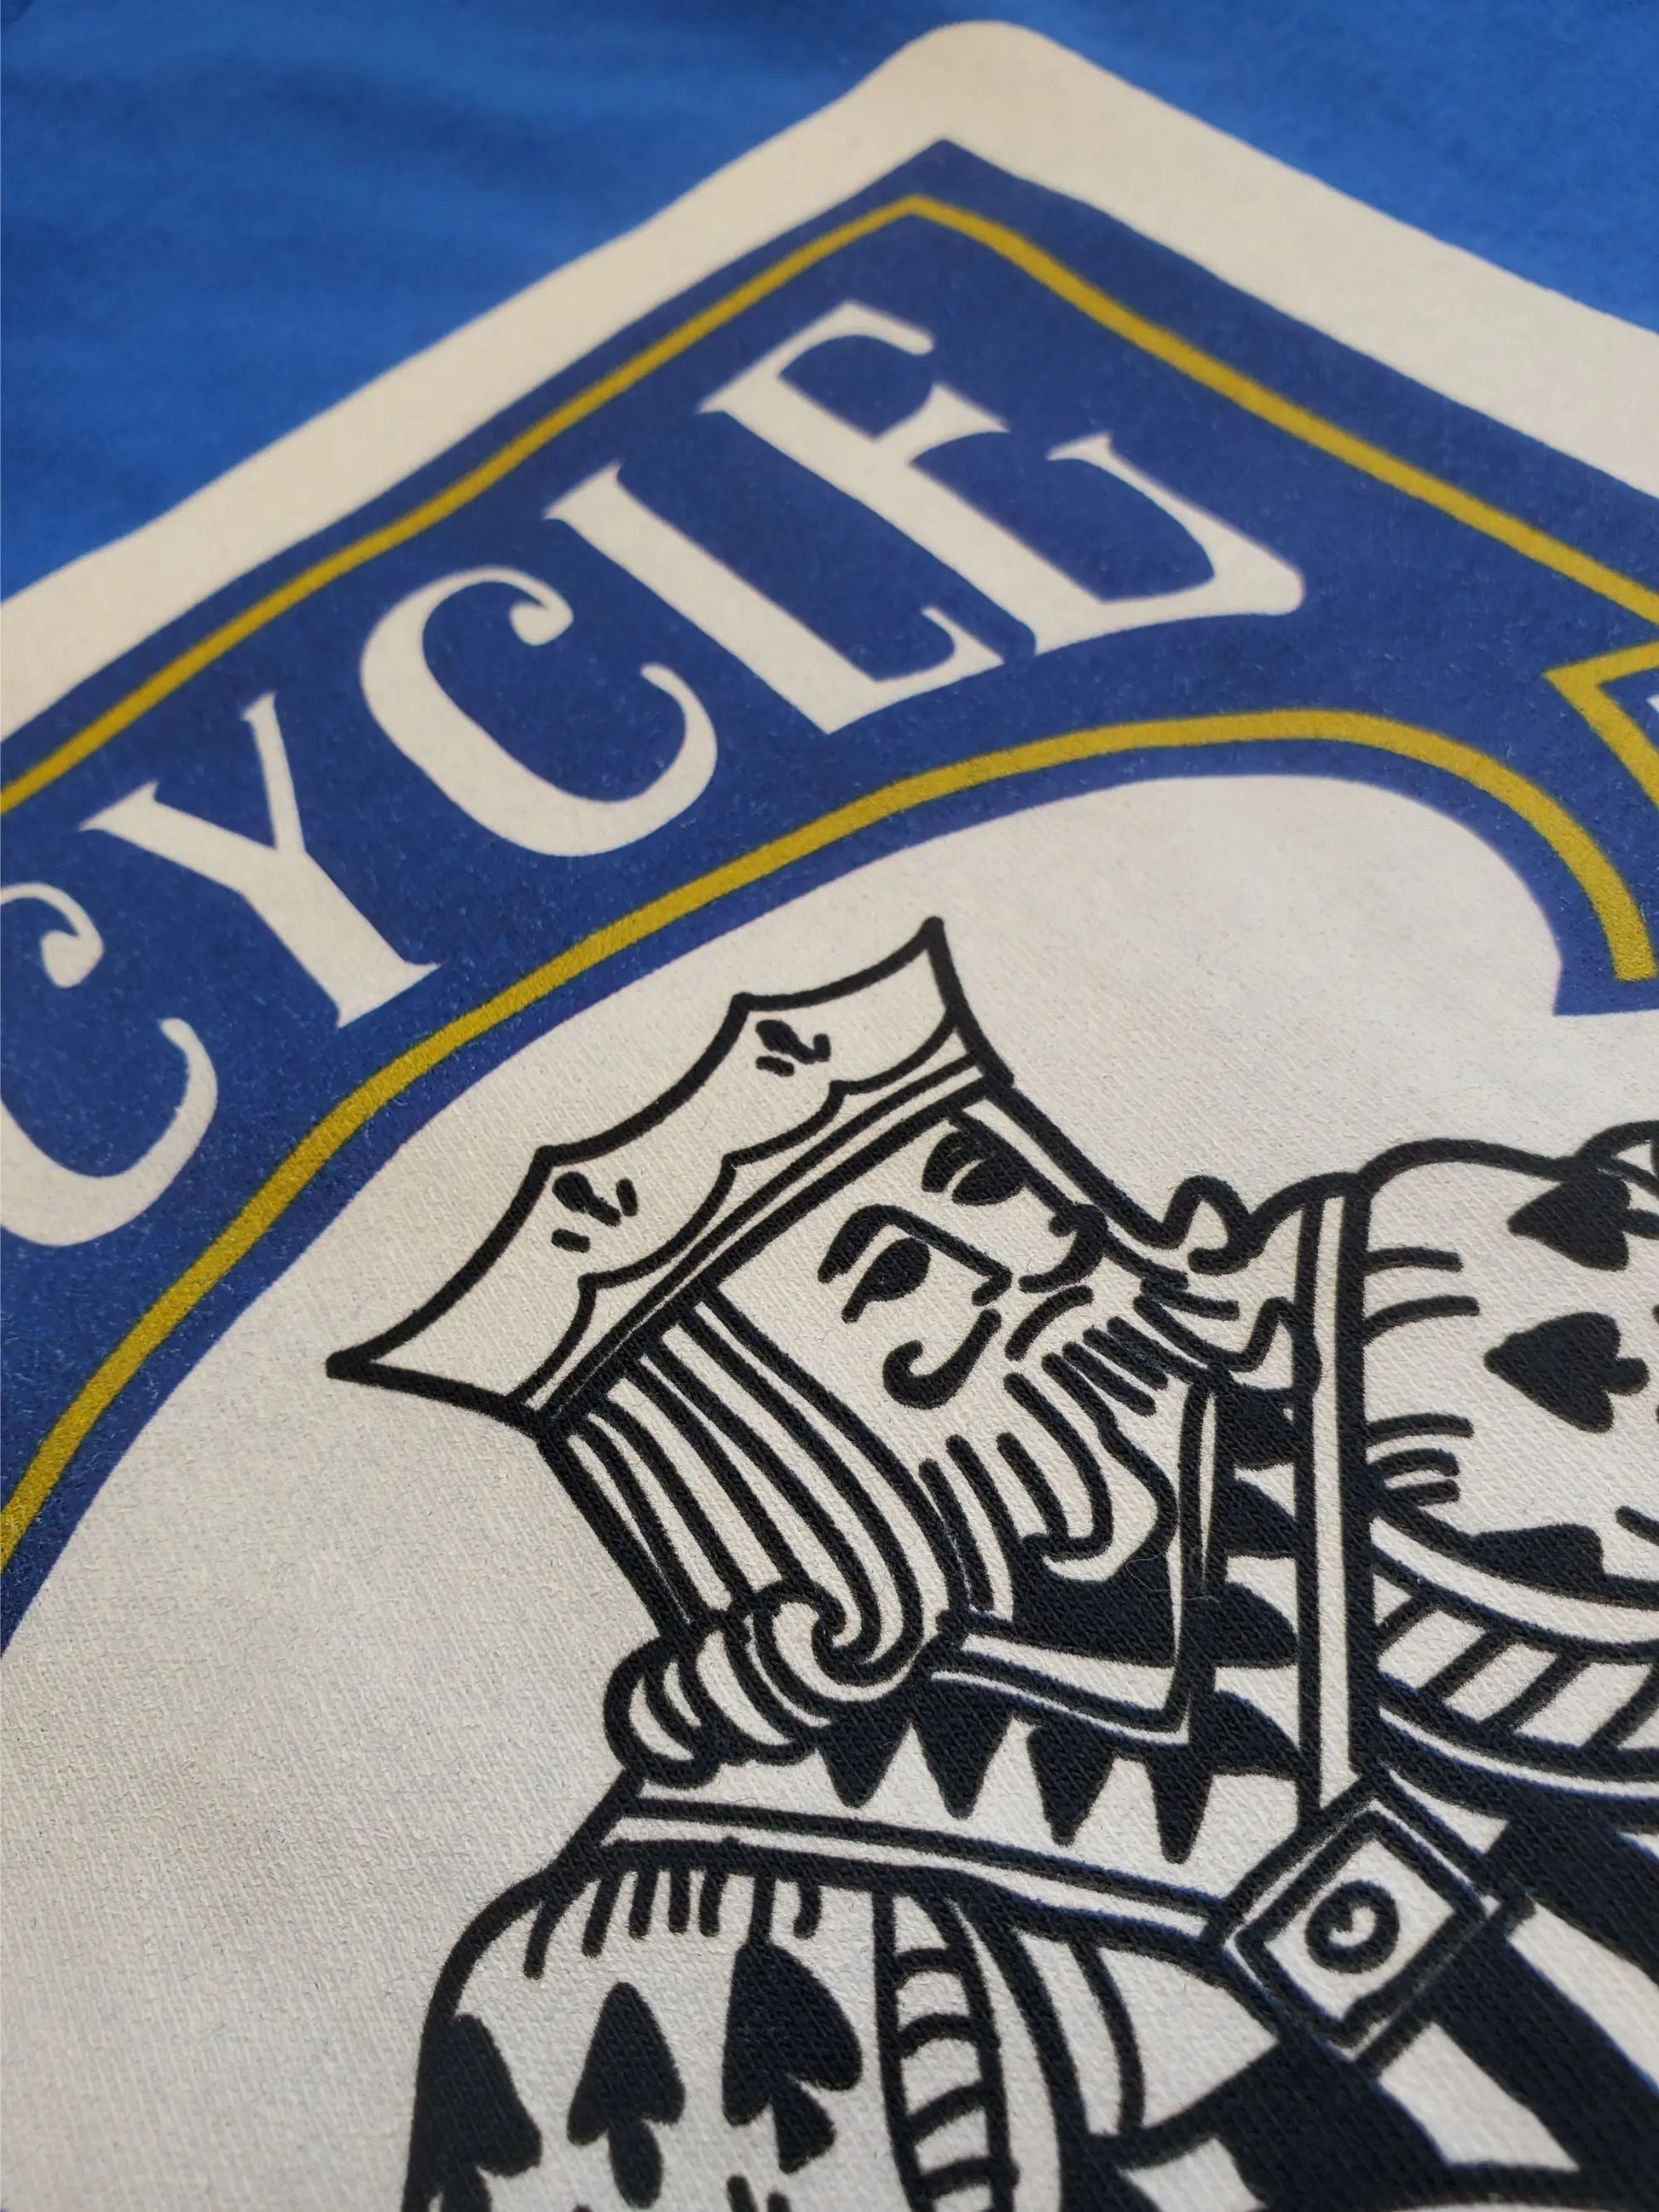 Bicycles True Kings of the Road T-Shirt - Geeks'n'Gears - bicycle bike biking